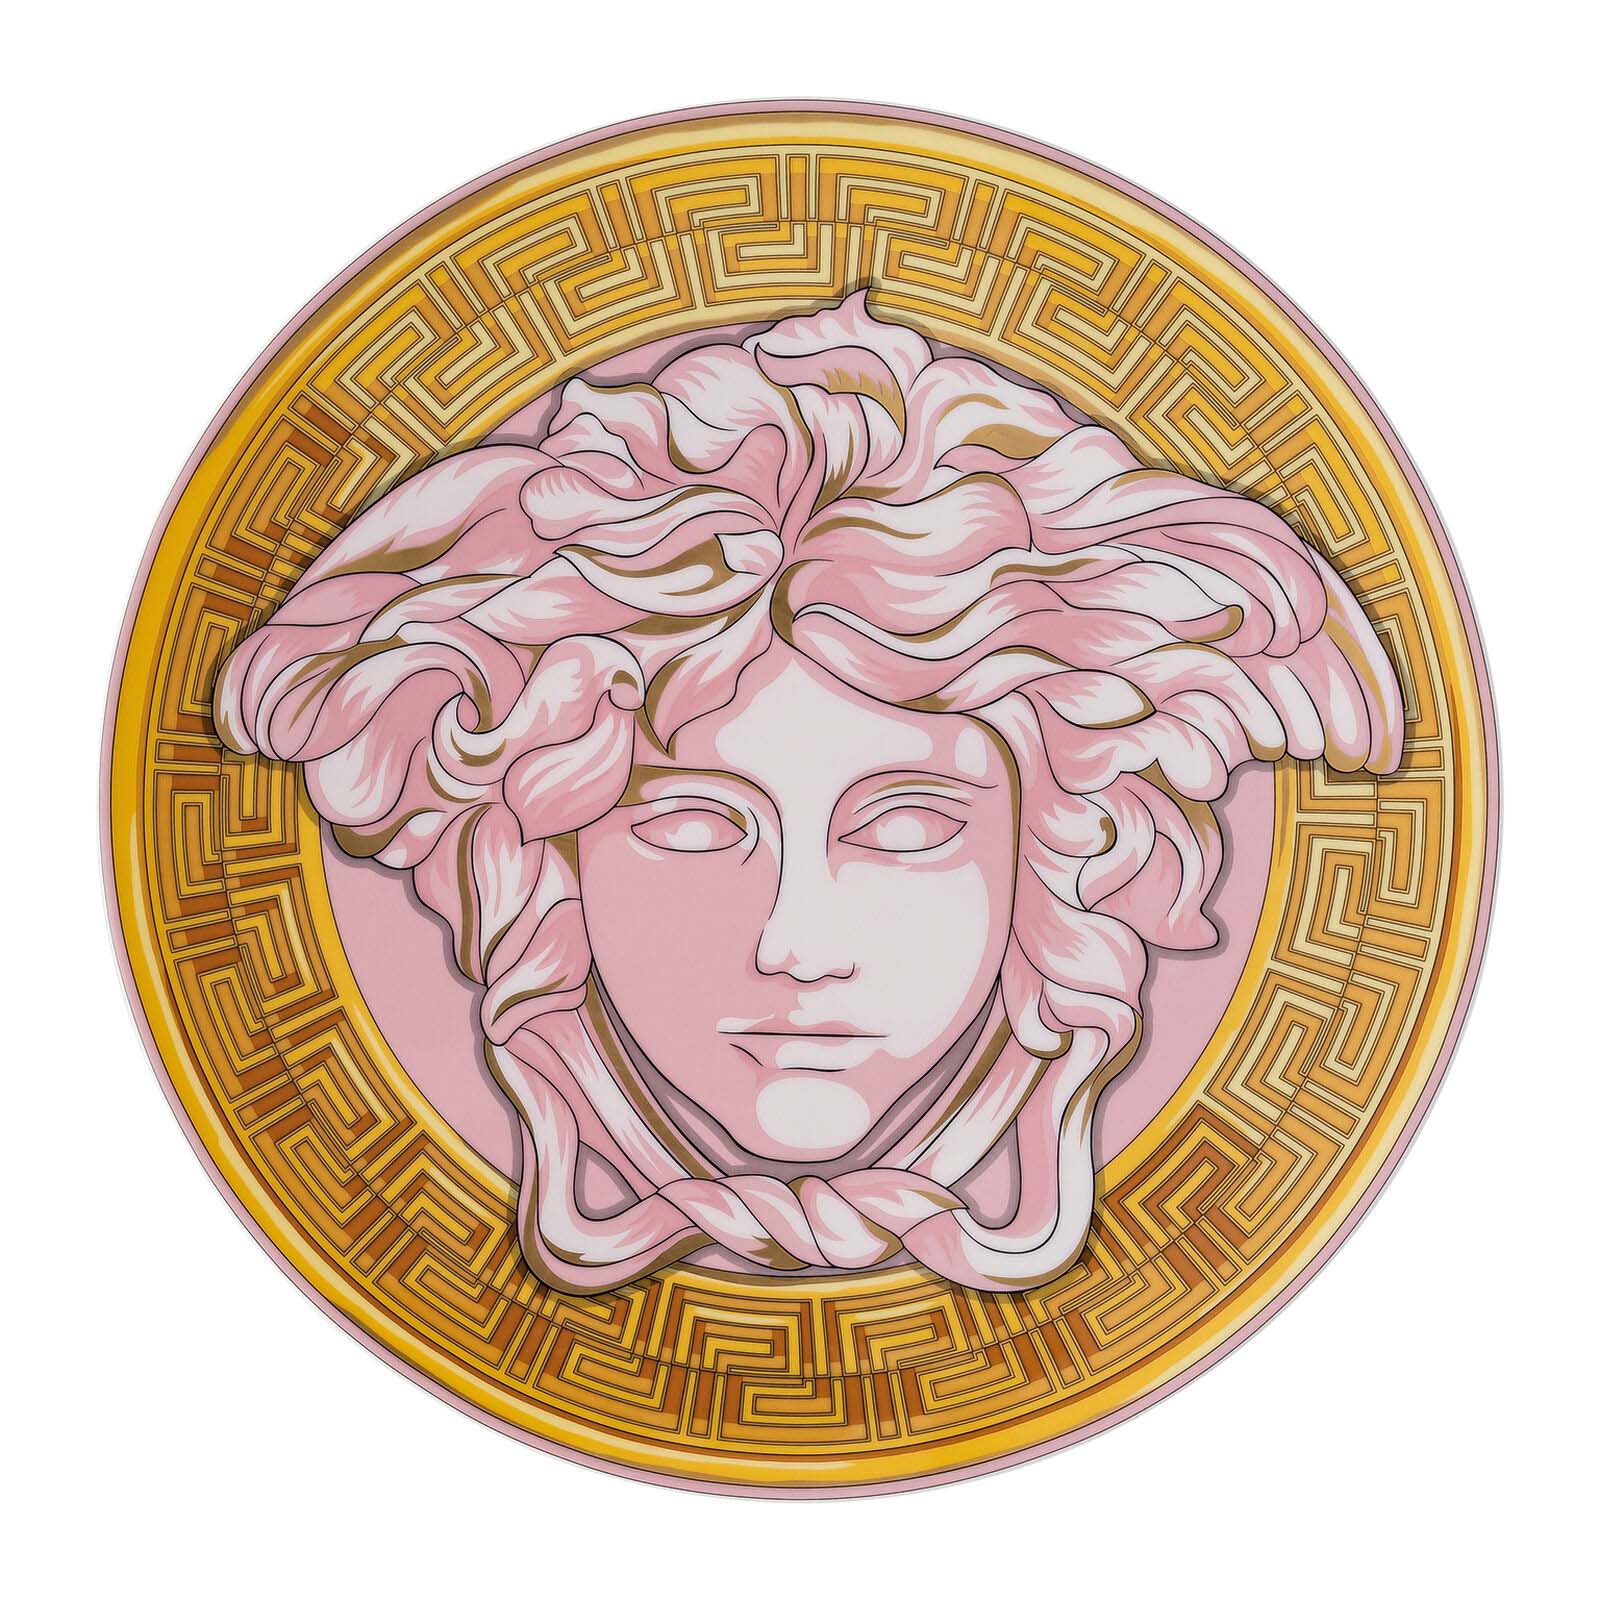 मेडुसा प्रवर्धित गुलाबी सिक्का प्लेट की तस्वीर